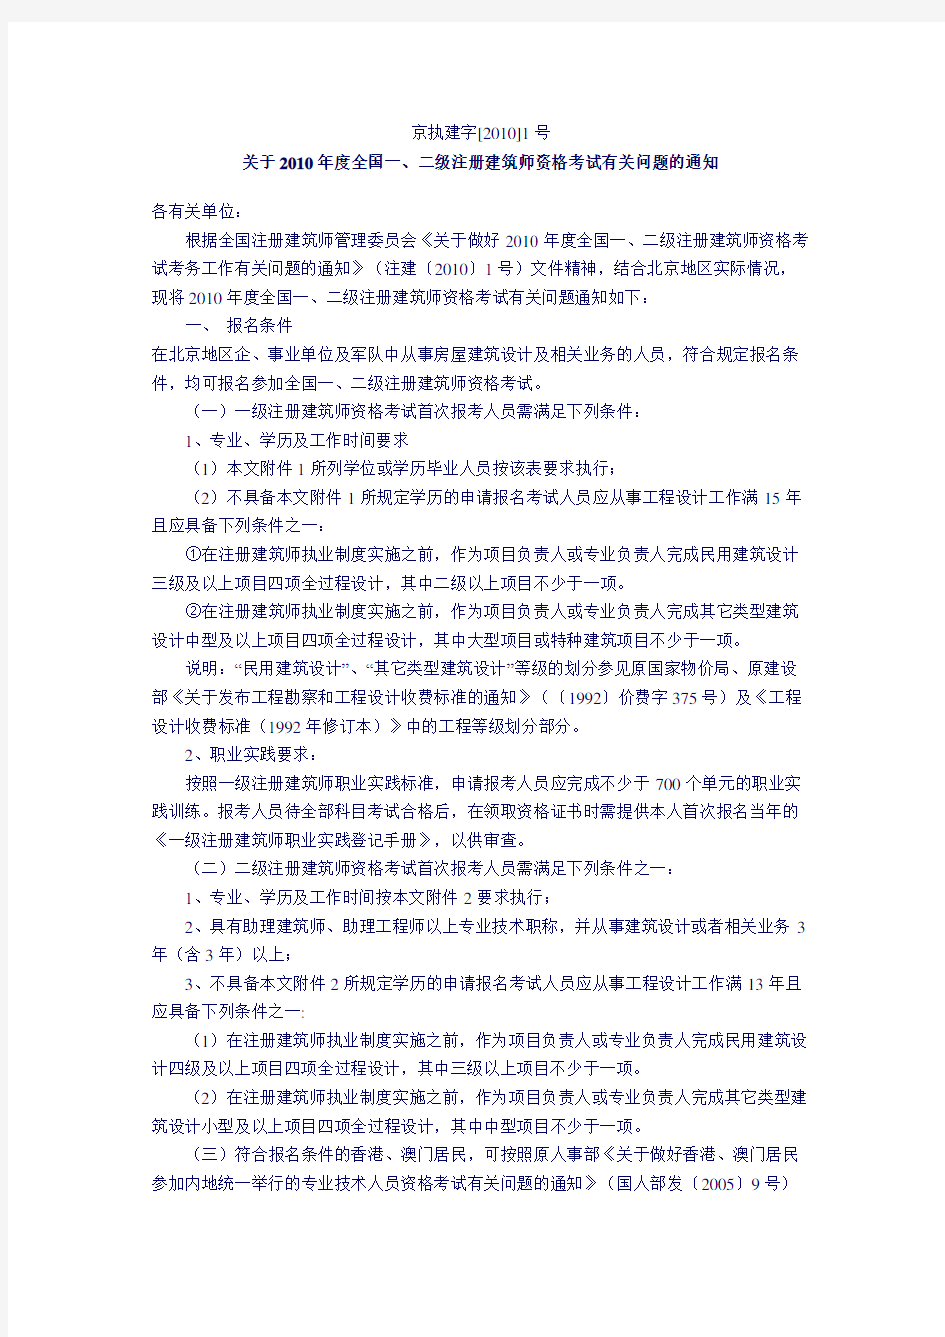 北京市注册建筑师管理委员会考试办公室